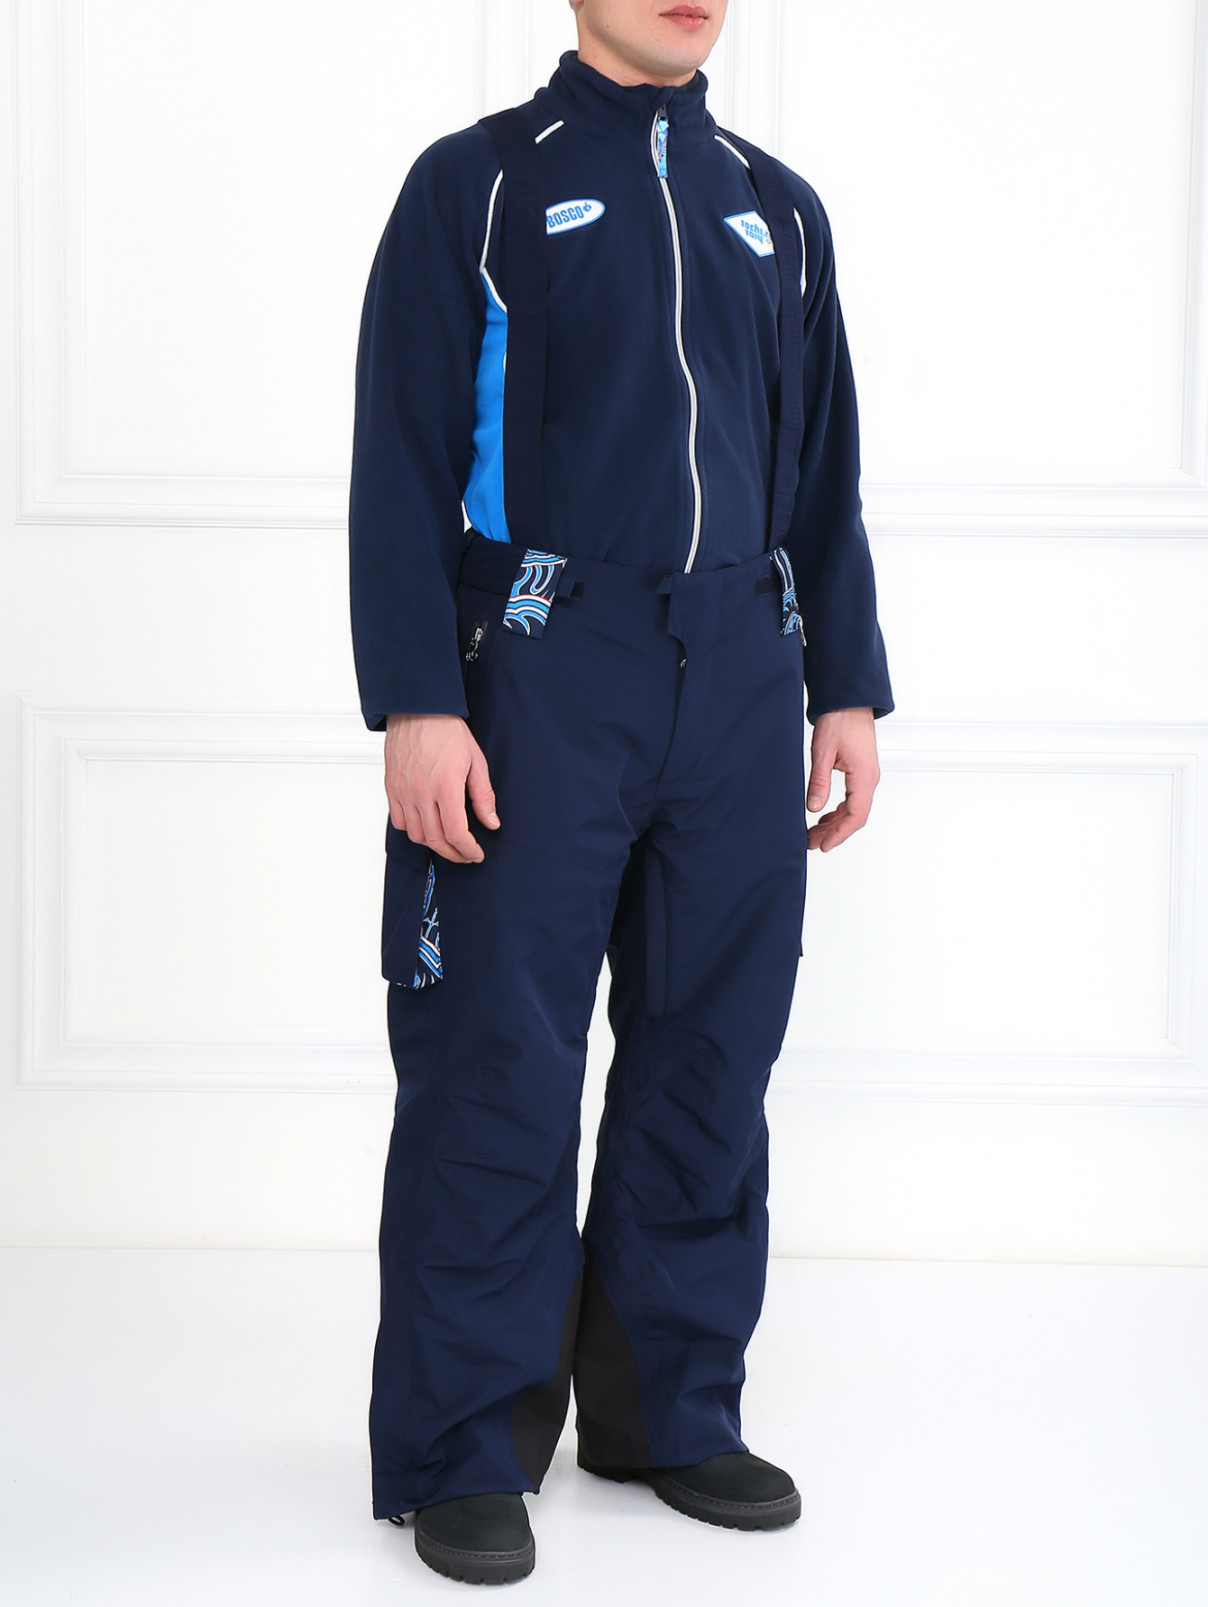 Брюки горнолыжные с накладными карманами Sochi 2014  –  Модель Общий вид  – Цвет:  Синий